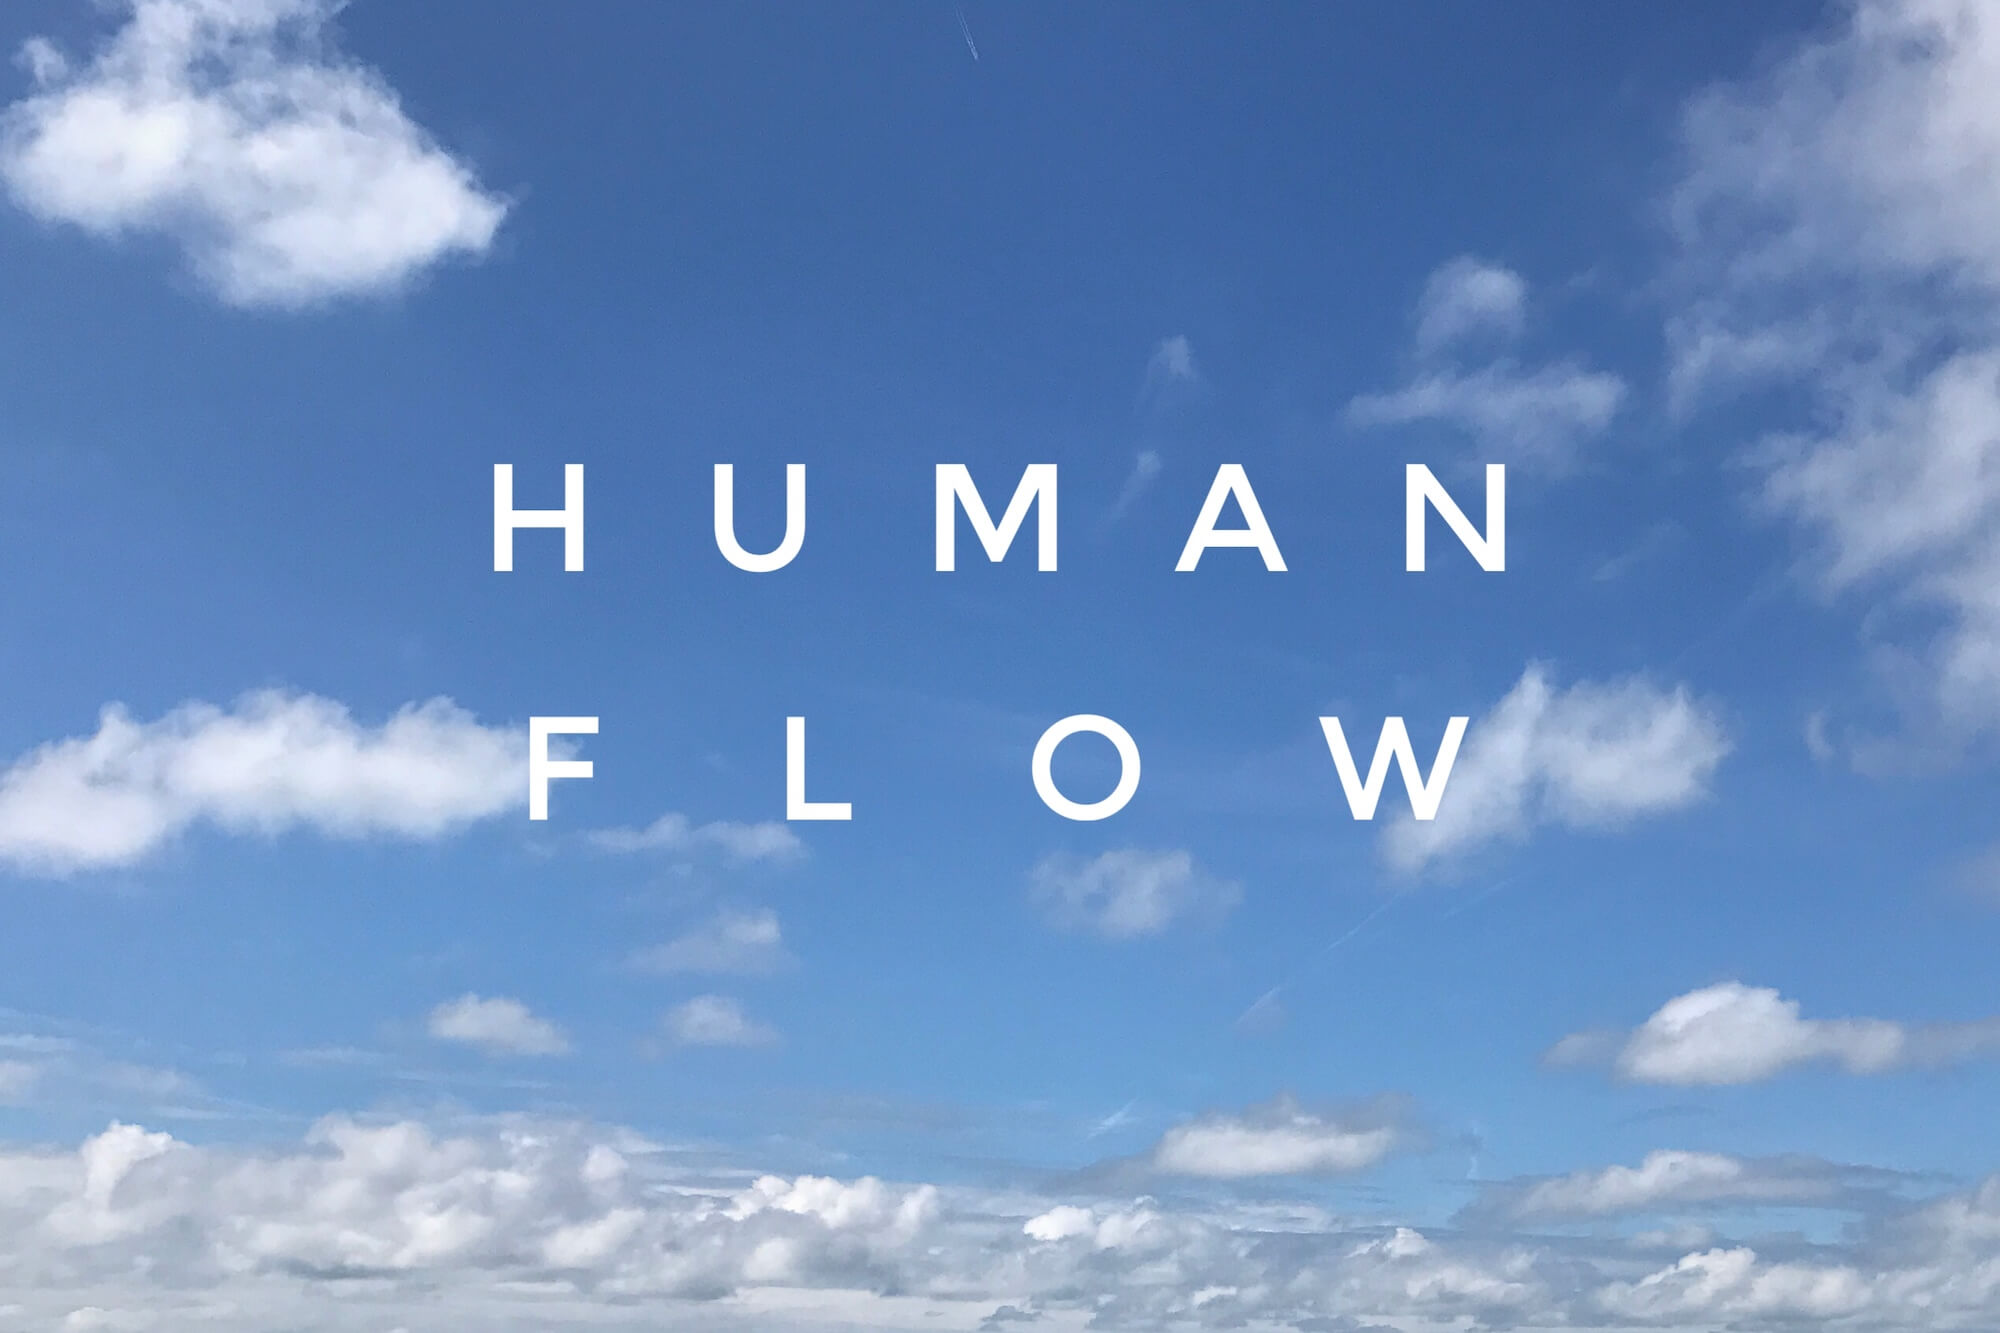 Der Künstler und Aktivist Ai Weiwei nähert sich in seinem Film "Human Flow" dem Thema Flucht und Vertreibung auf seine Weise.